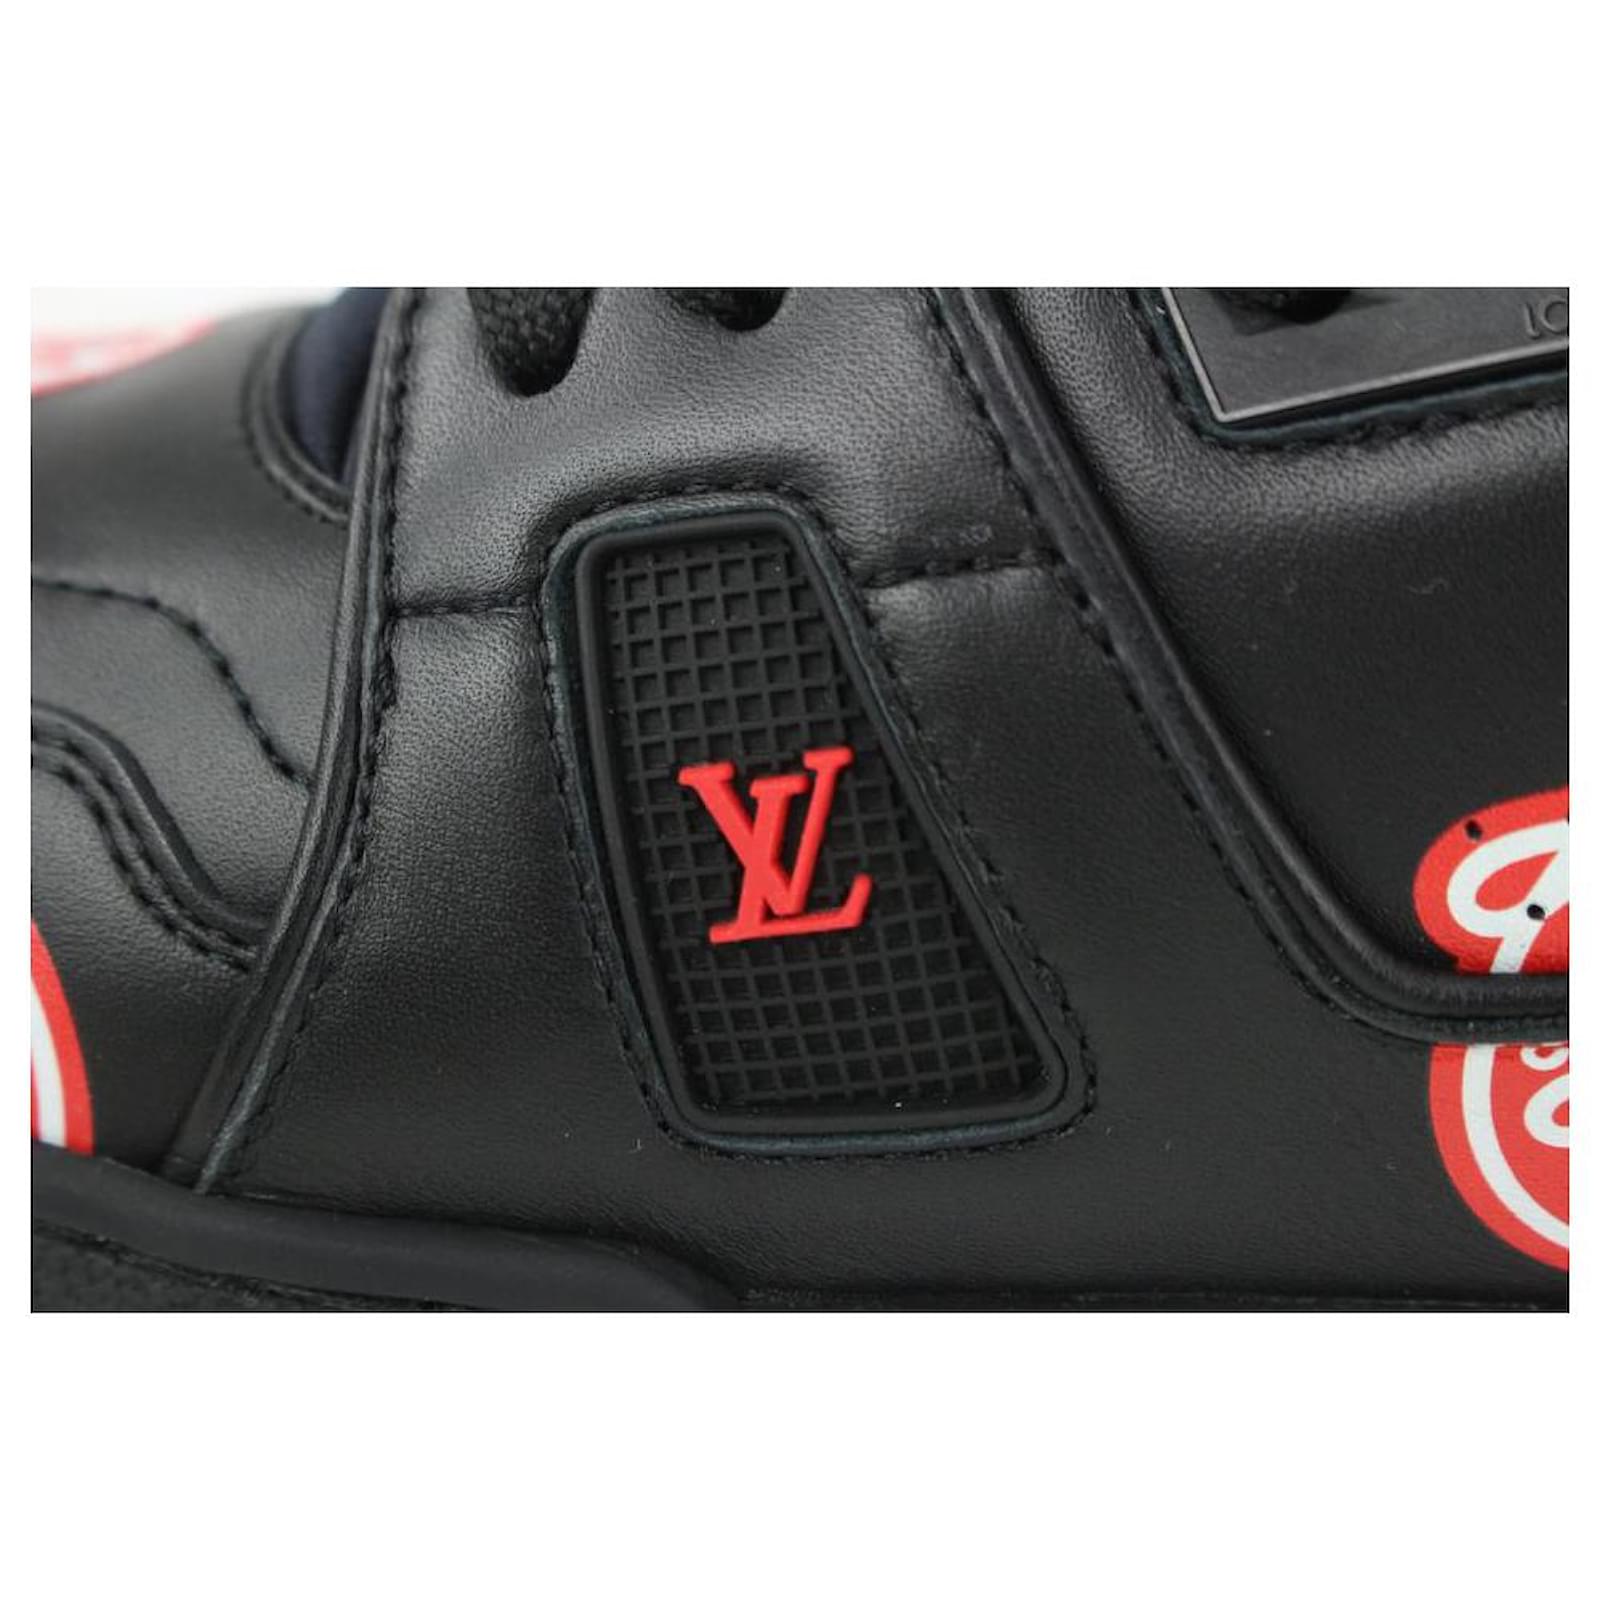 Louis Vuitton Mens Virgil Abloh x Nigo LV Made Heart Trainer Black